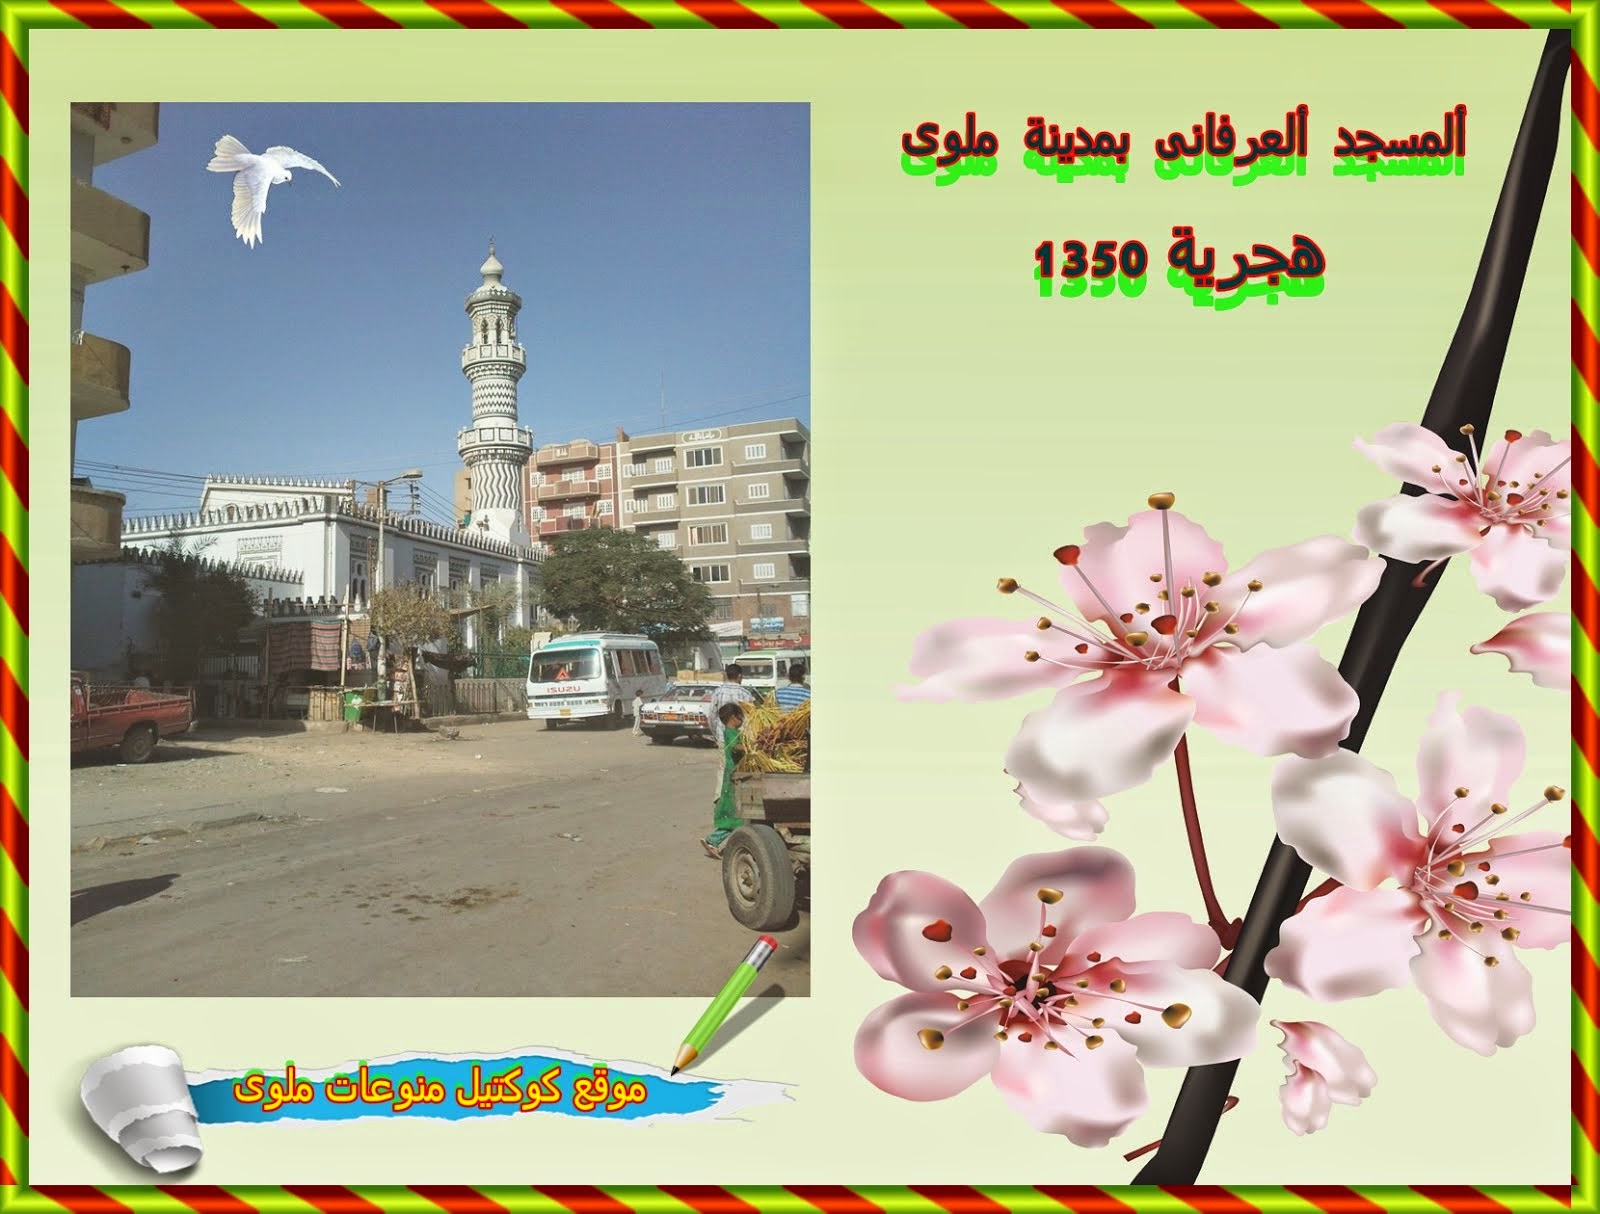 مسجد ألعرفانى بوسك مدينة ملوى 1350 هجرية